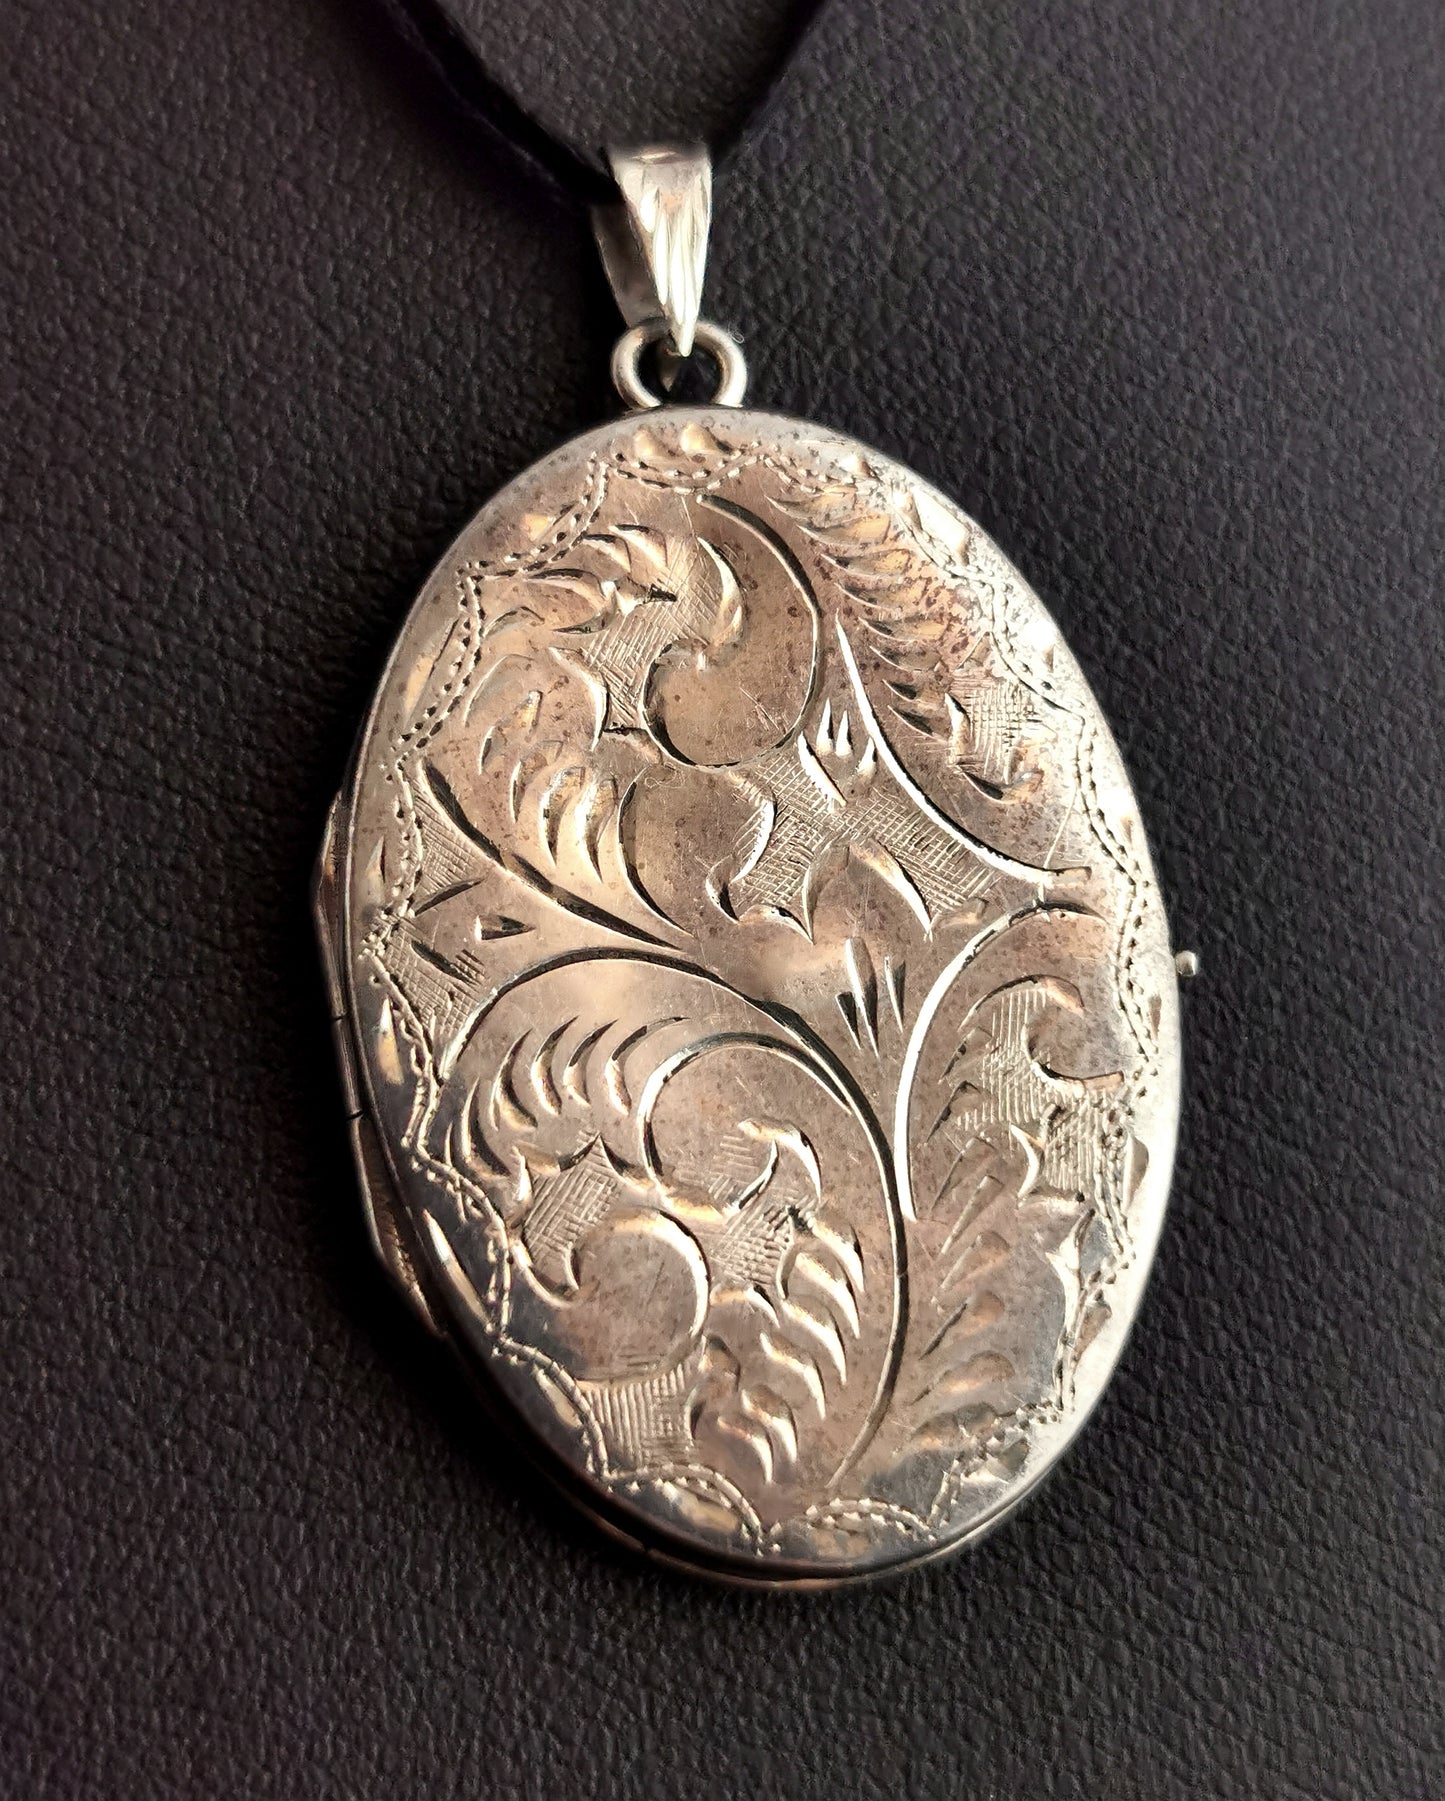 Vintage sterling silver locket pendant, engraved